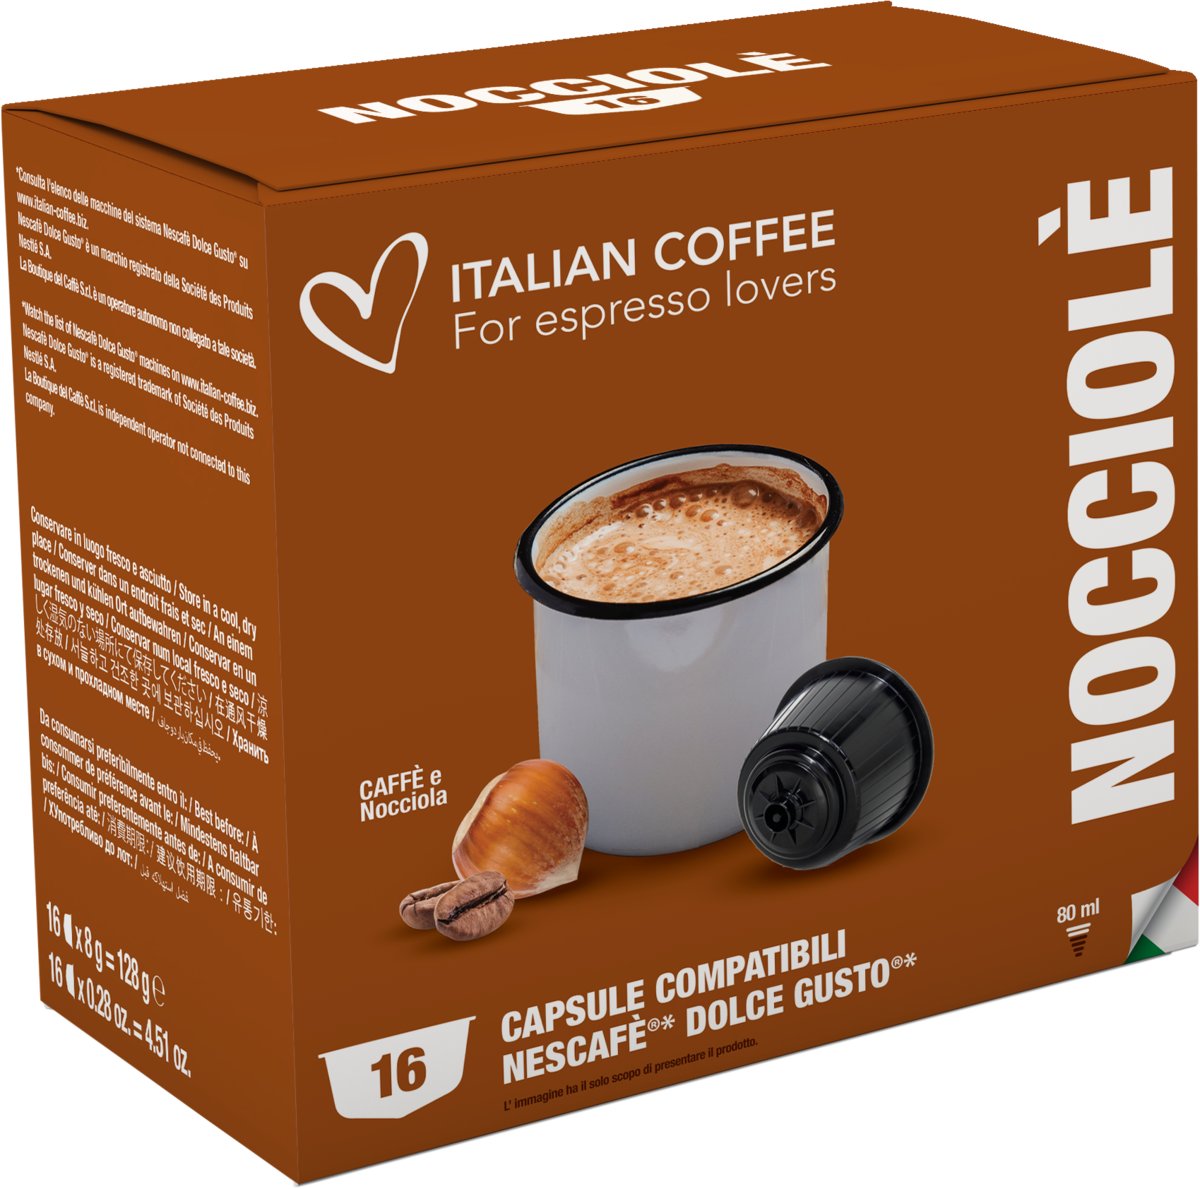 Italian Coffee, Nocciole, Orzech Laskowy, Kapsułki Do Dolce Gusto, 16 Kapsułek